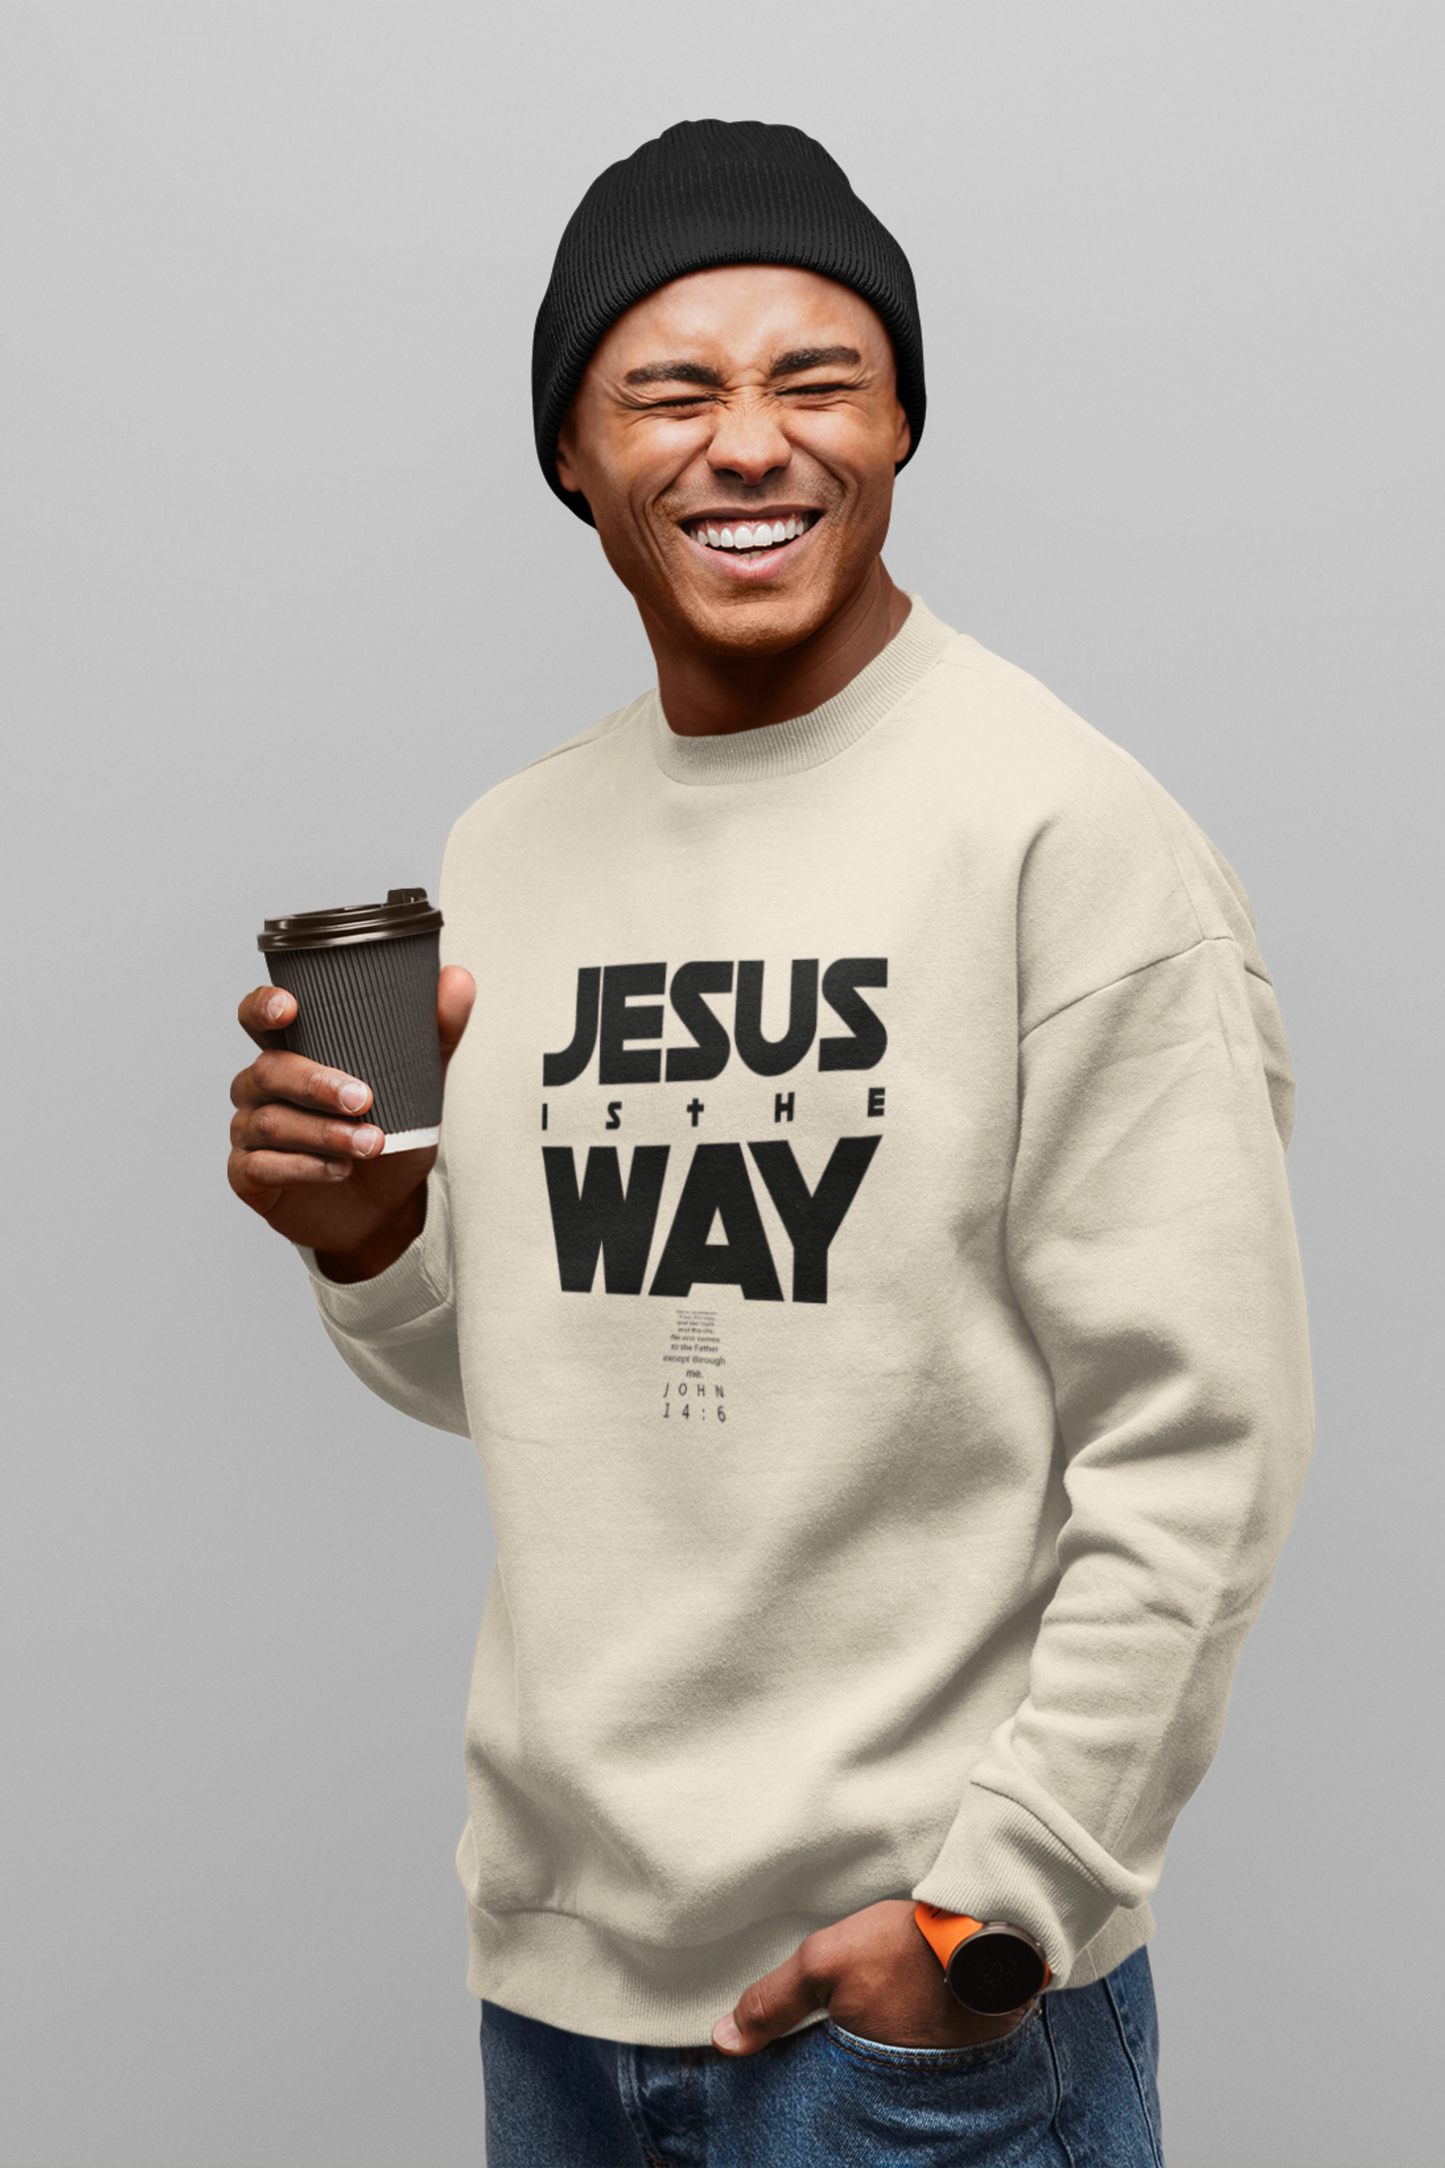 Jesus is the WAY. Sweatshirt.